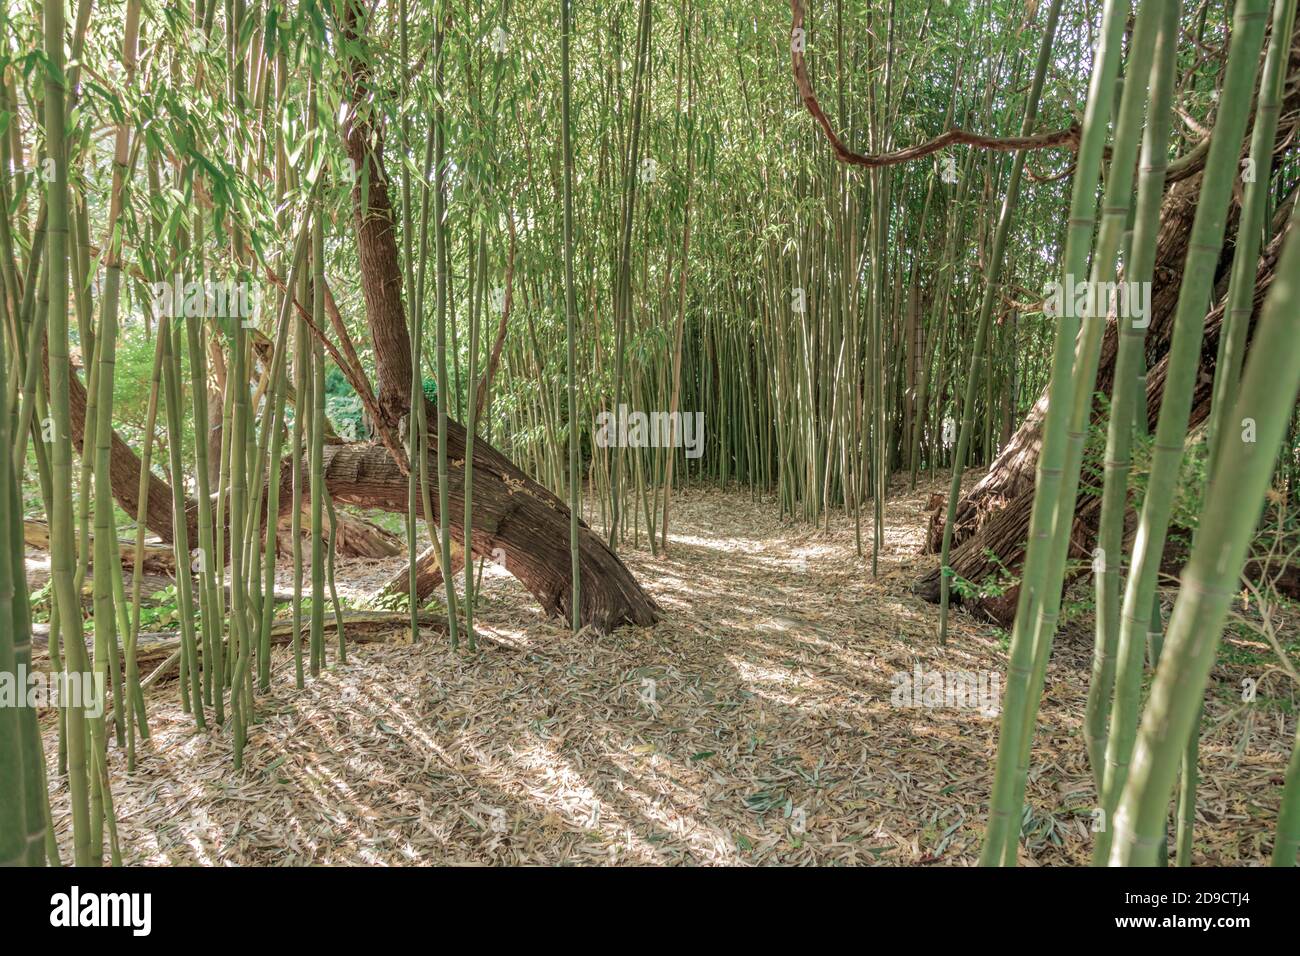 paisaje con bambú y un camino sencillo Foto de stock